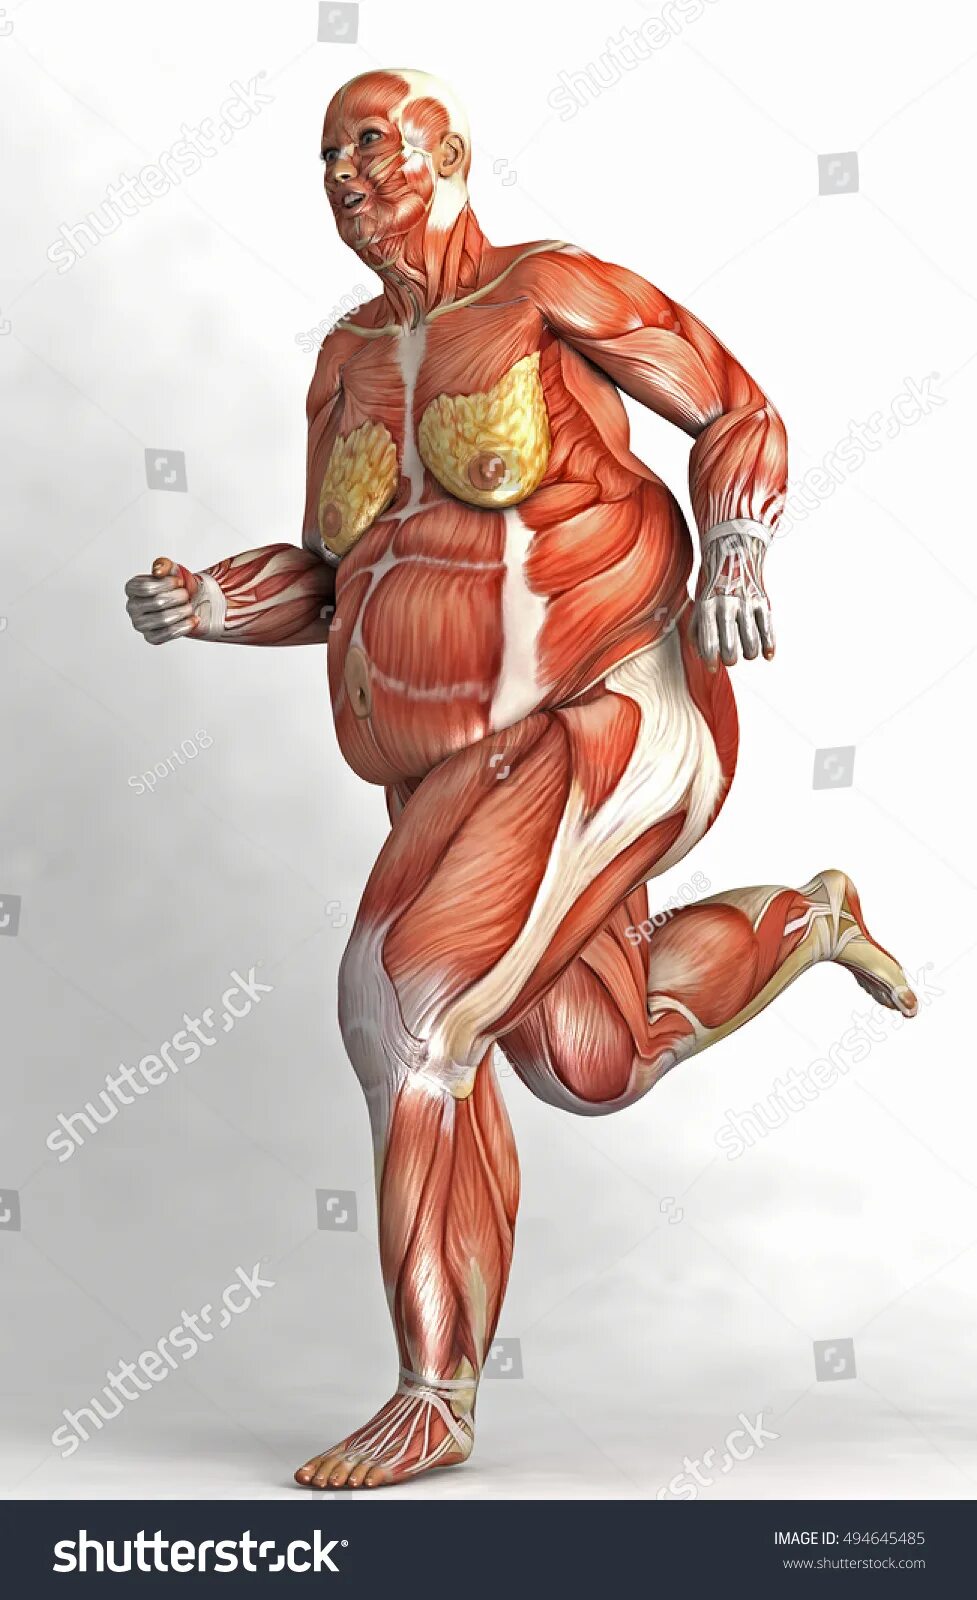 Толстый человек анатомия. Мышцы человека. Скелет человека с мышцами. Тело человека без кожи и мышц. Мышцы женского тела.